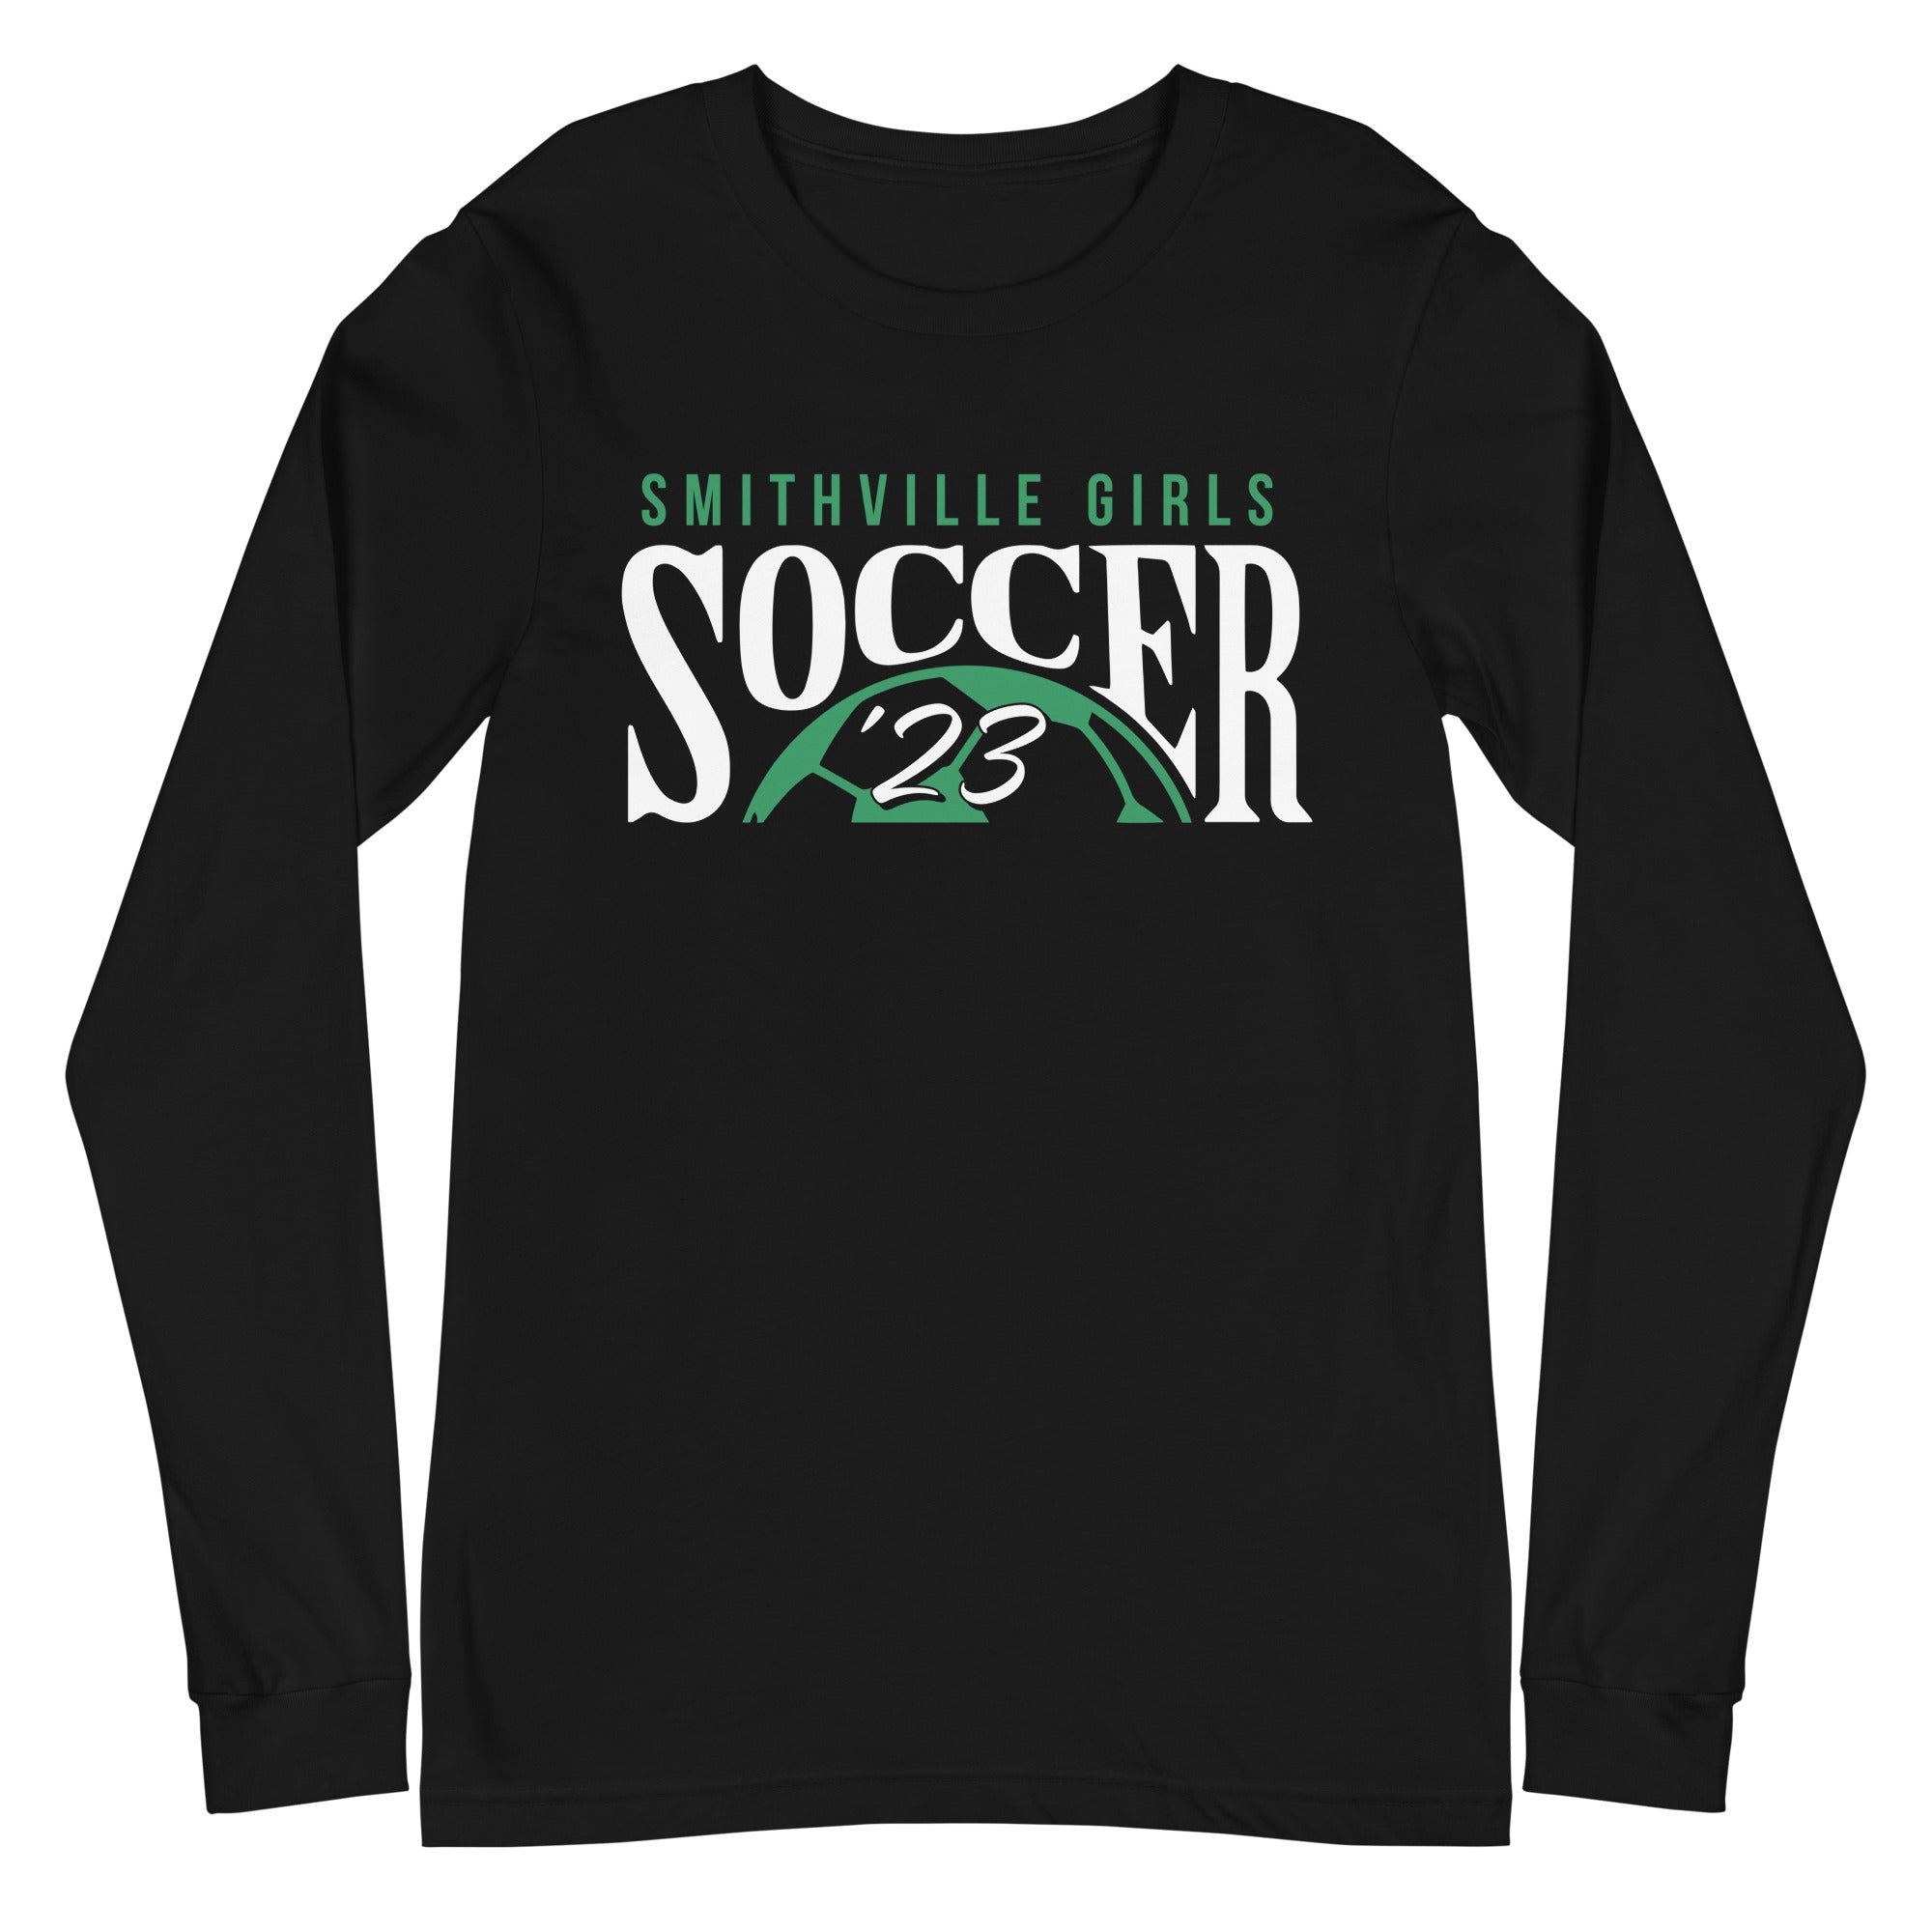 Smithville Girls Soccer '23 Unisex Long Sleeve Tee